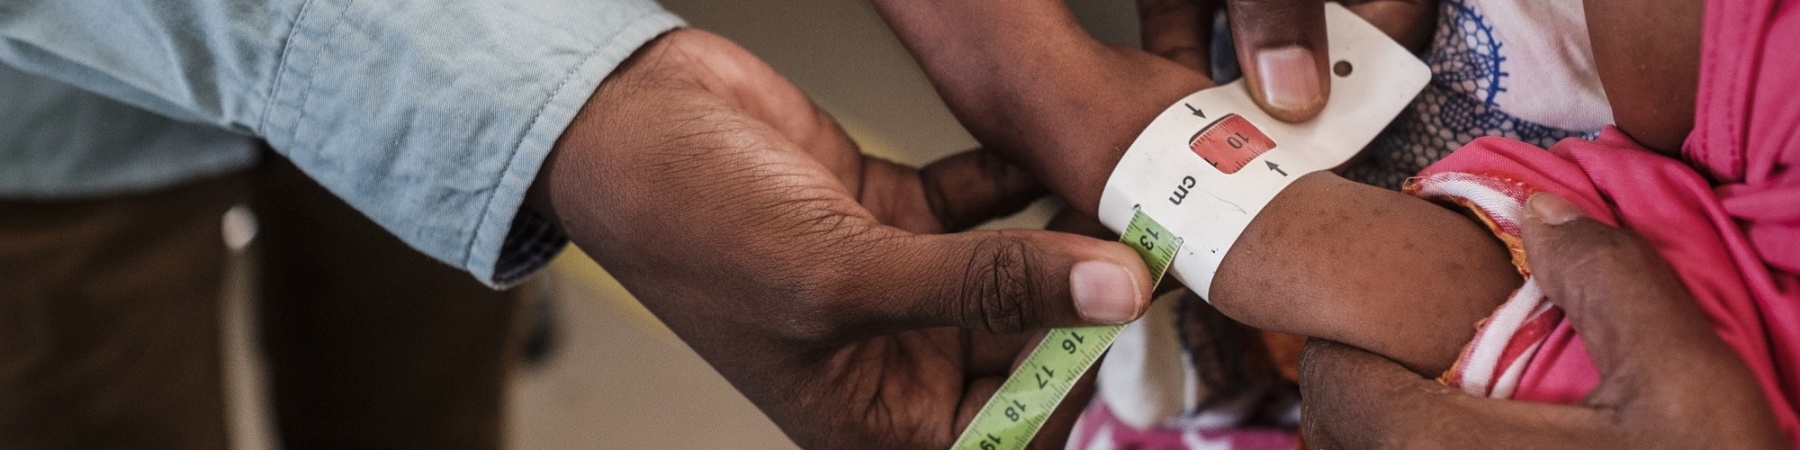 dettaglio sulle mani di un medico che prende la circonferenza del braccio di un bambino malnutrito